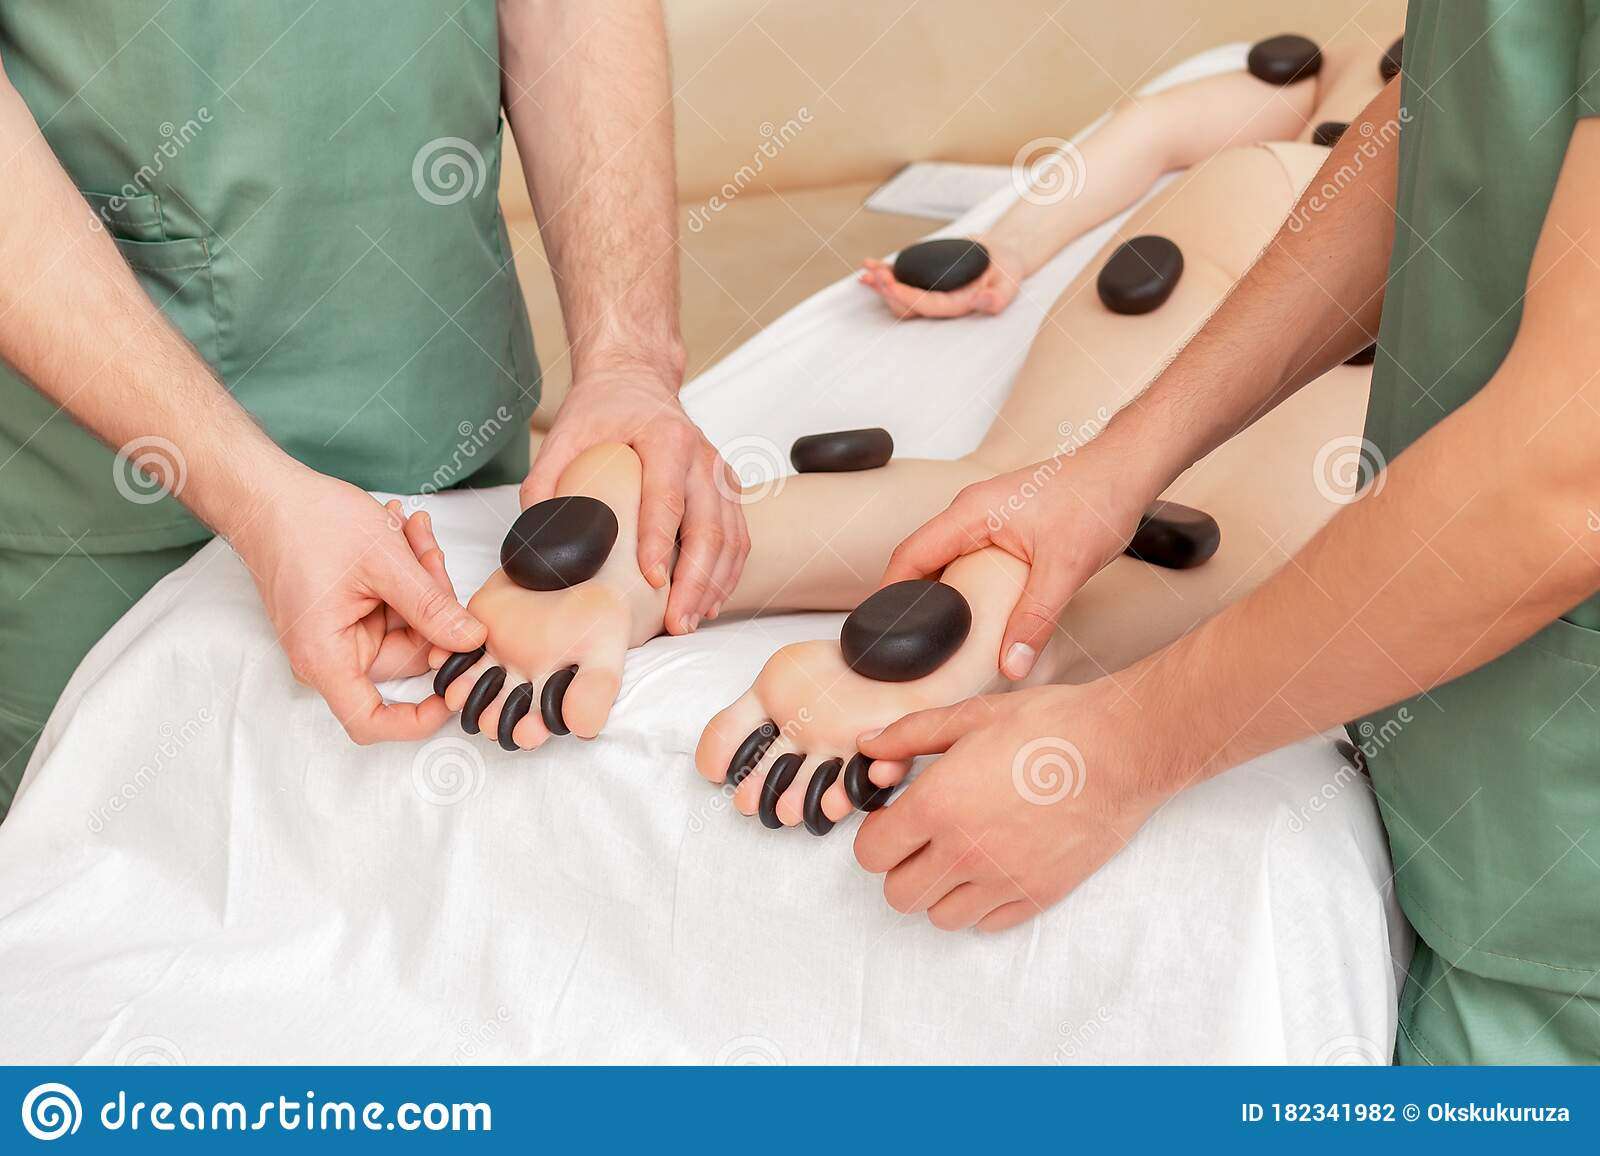 Stones Massage On Legs Of Woman Stock Photo